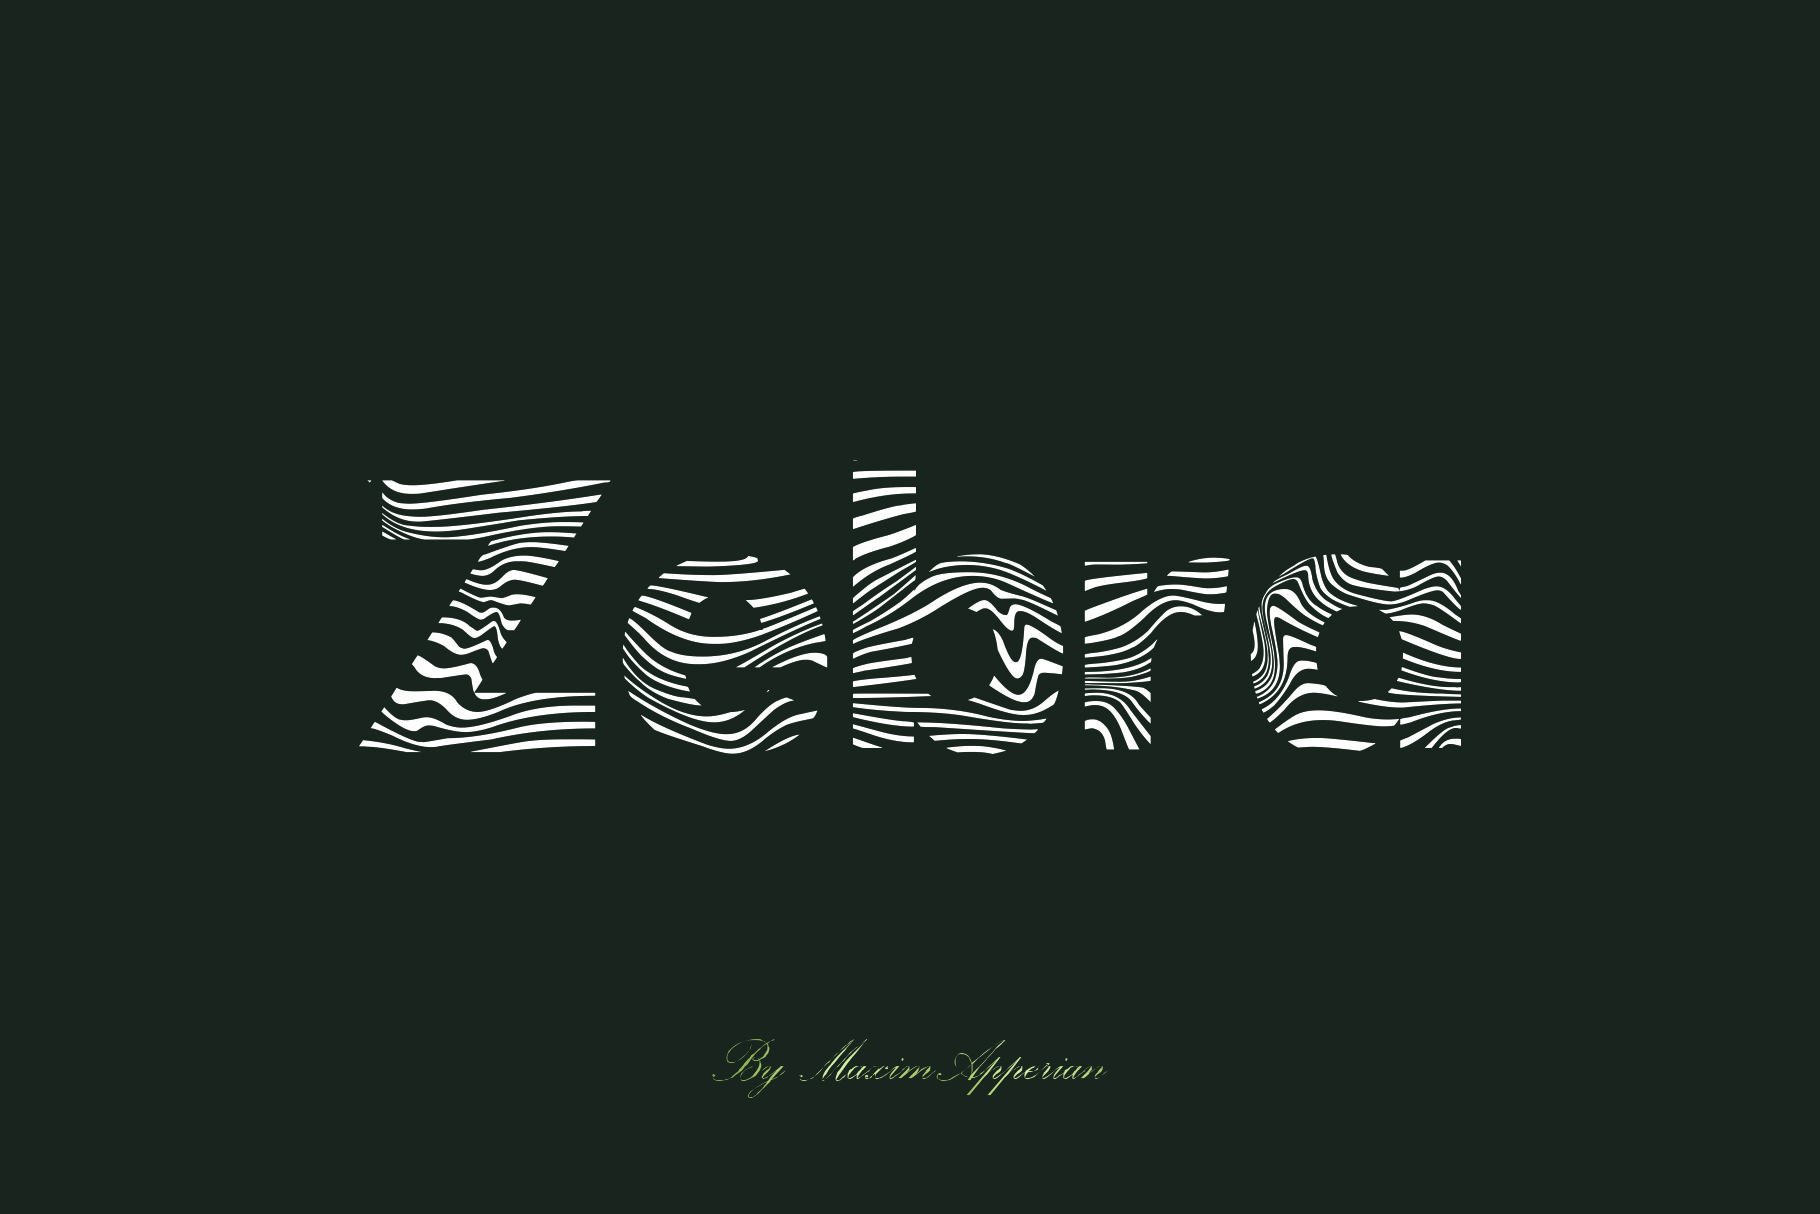 Zerbra Font Sans cover image.